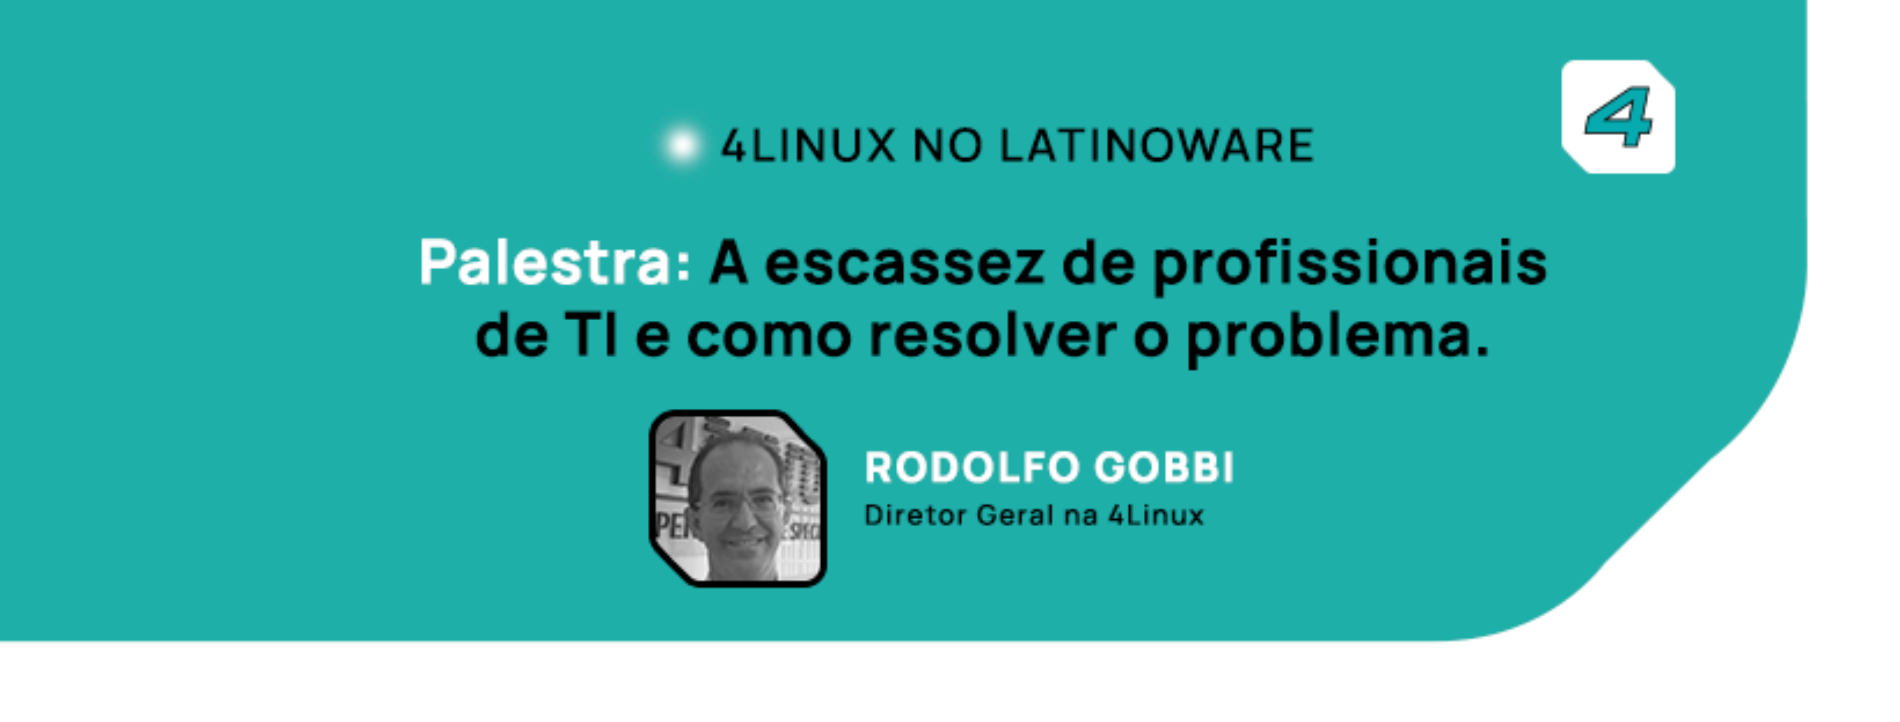 4linux apresentará palestra no Latinoware 2020 falando sobre a escassez de profissionais de TI.